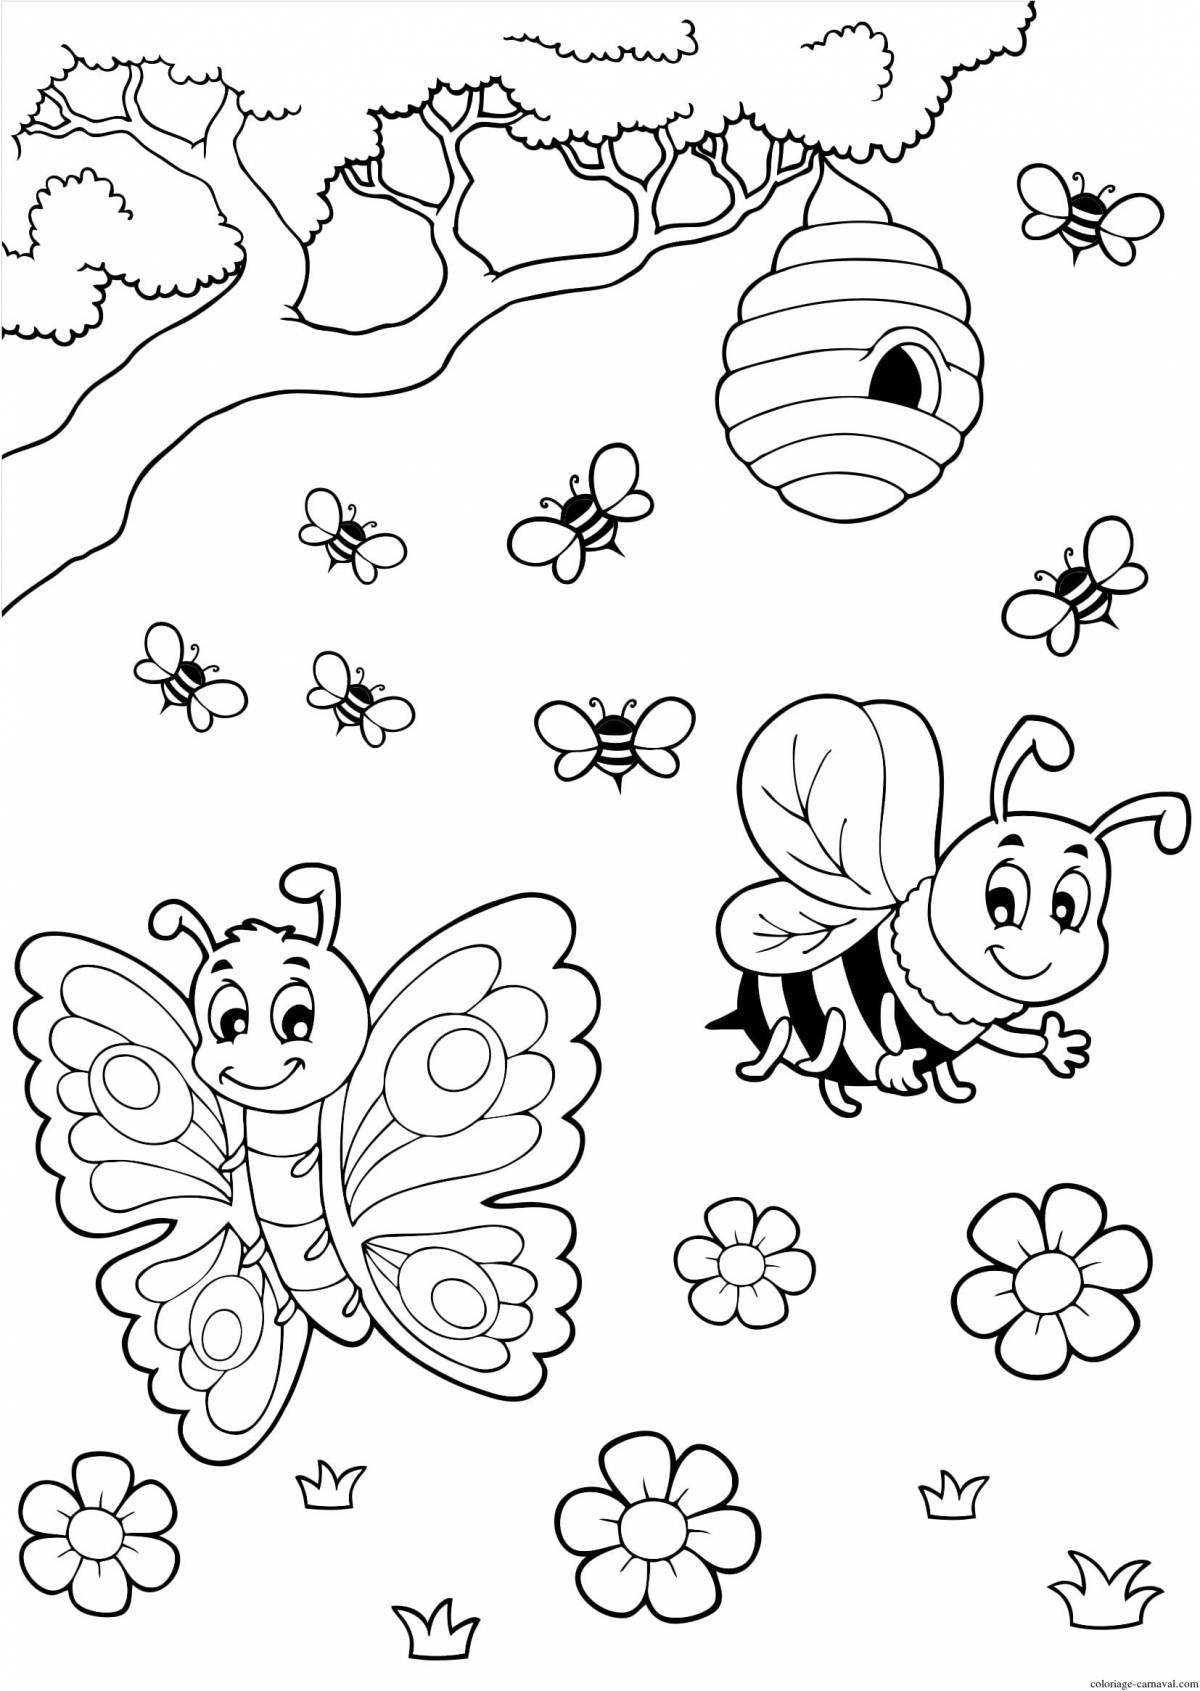 Раскраска с милыми насекомыми для детей 6-7 лет